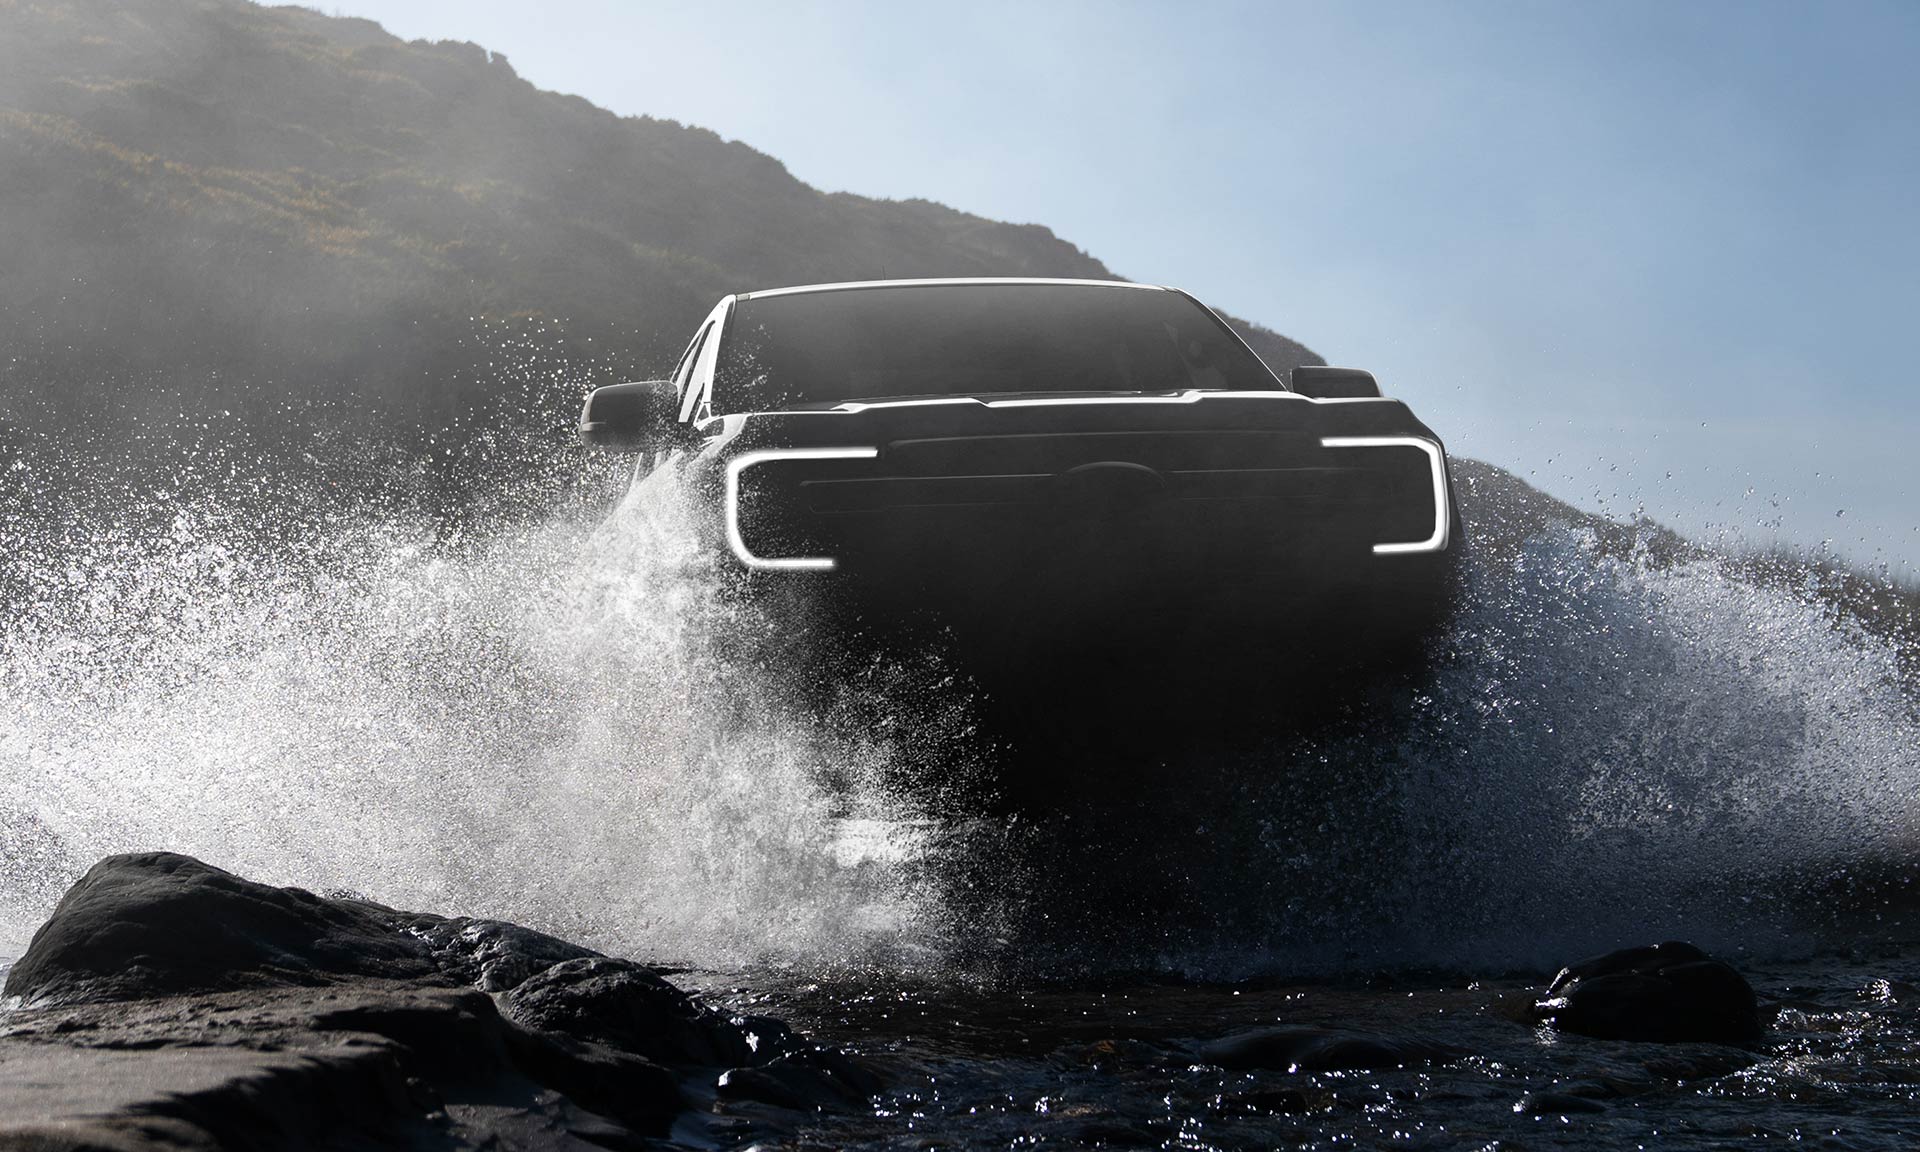 Ford Ranger dostal od designérů odvážný design podle přání zákazníků